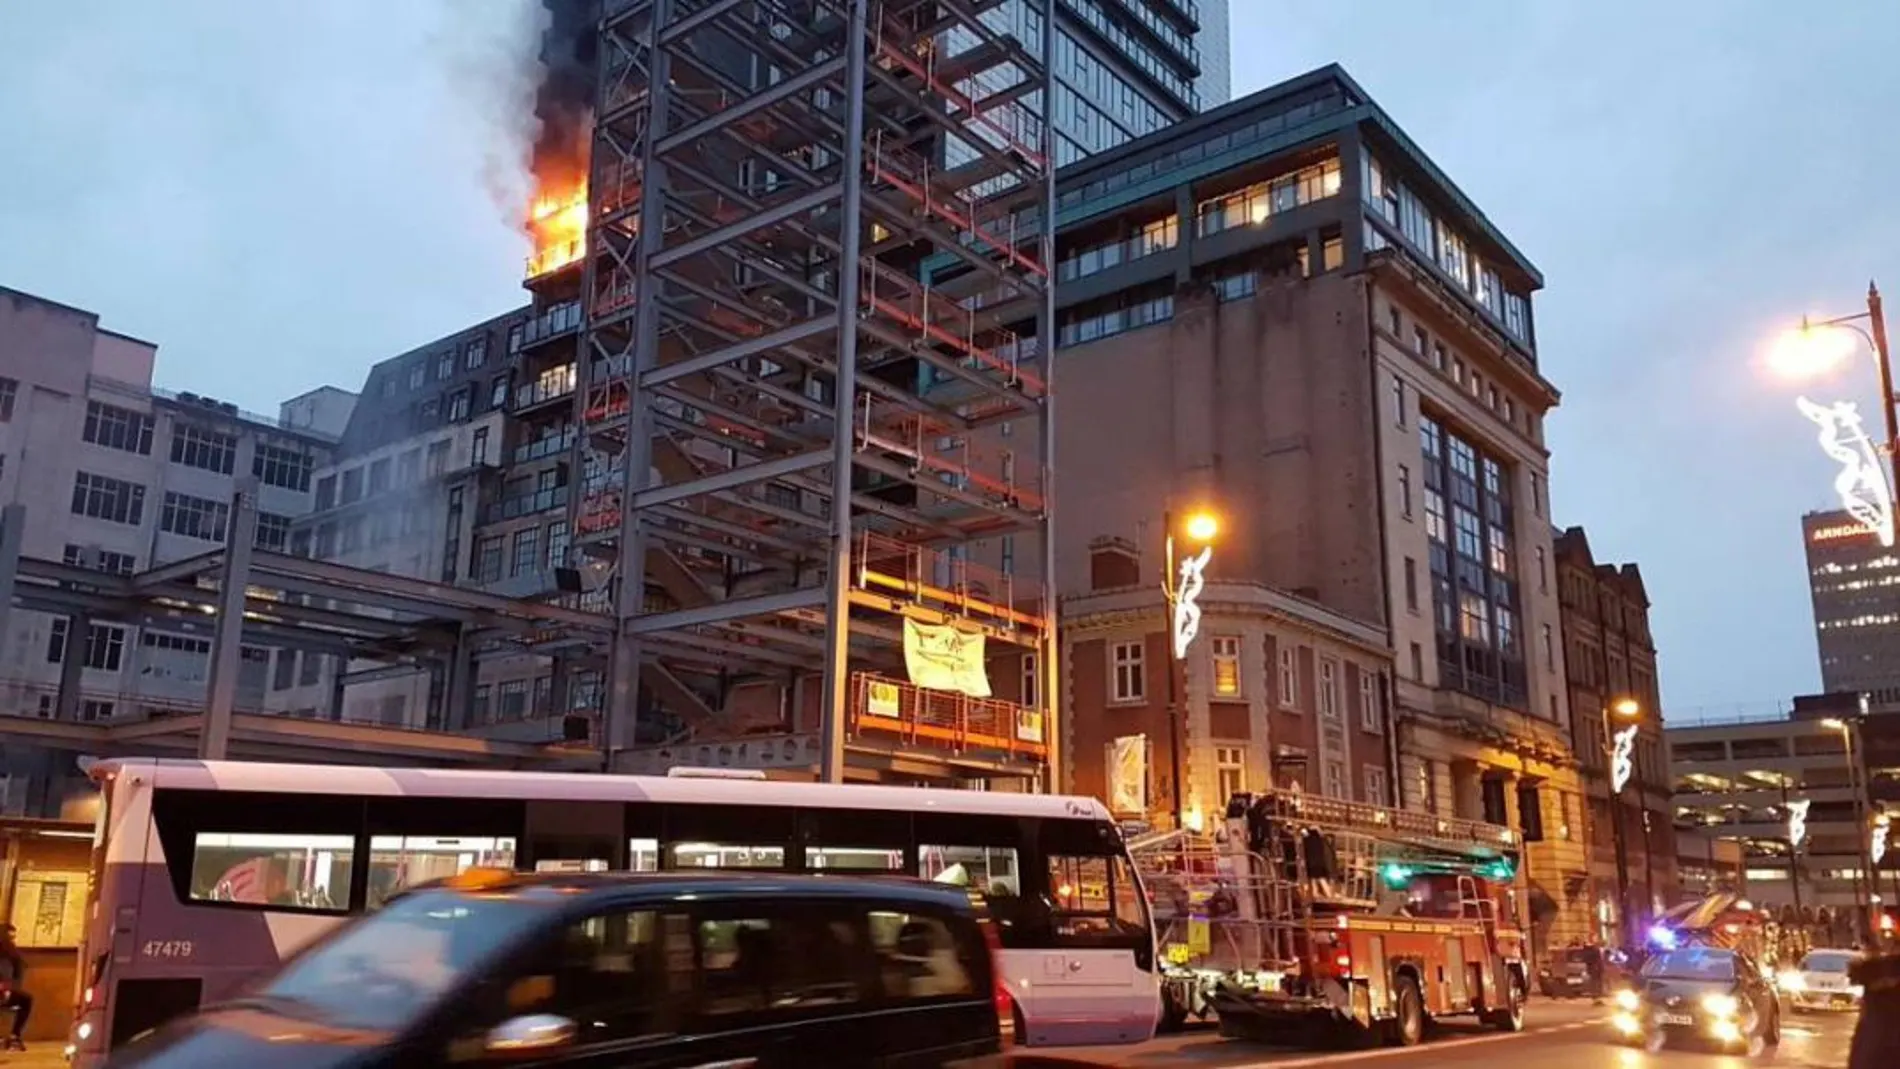 Imagen del bloque de pisos en llamas